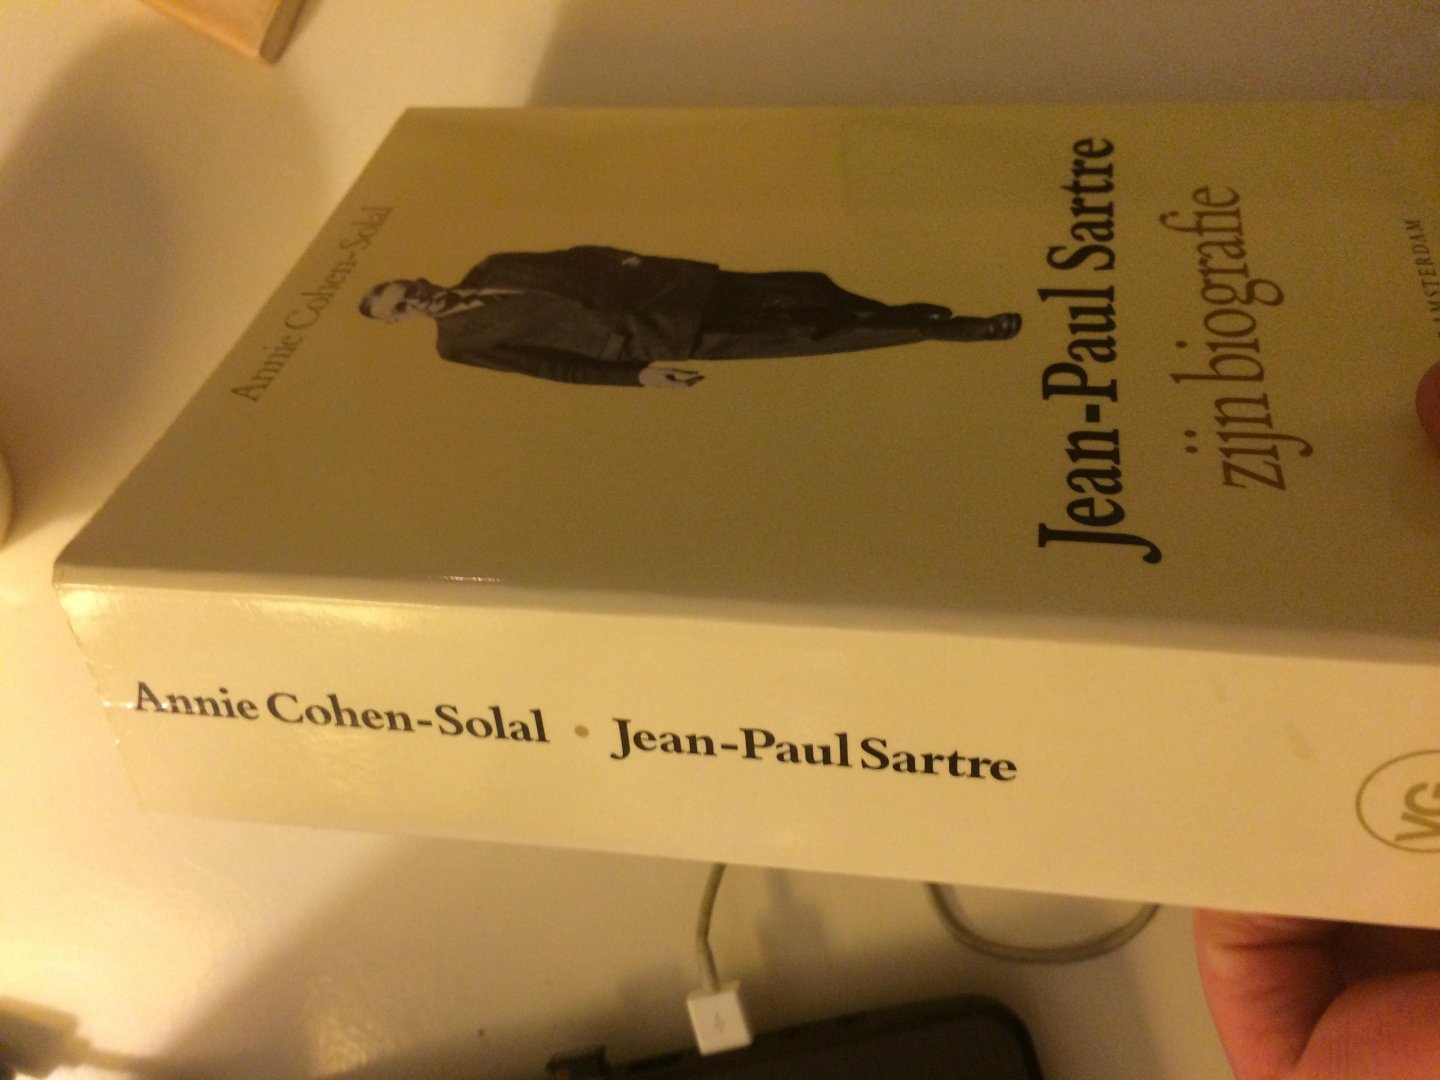 Cohen-Solal - Jean-Paul Sartre